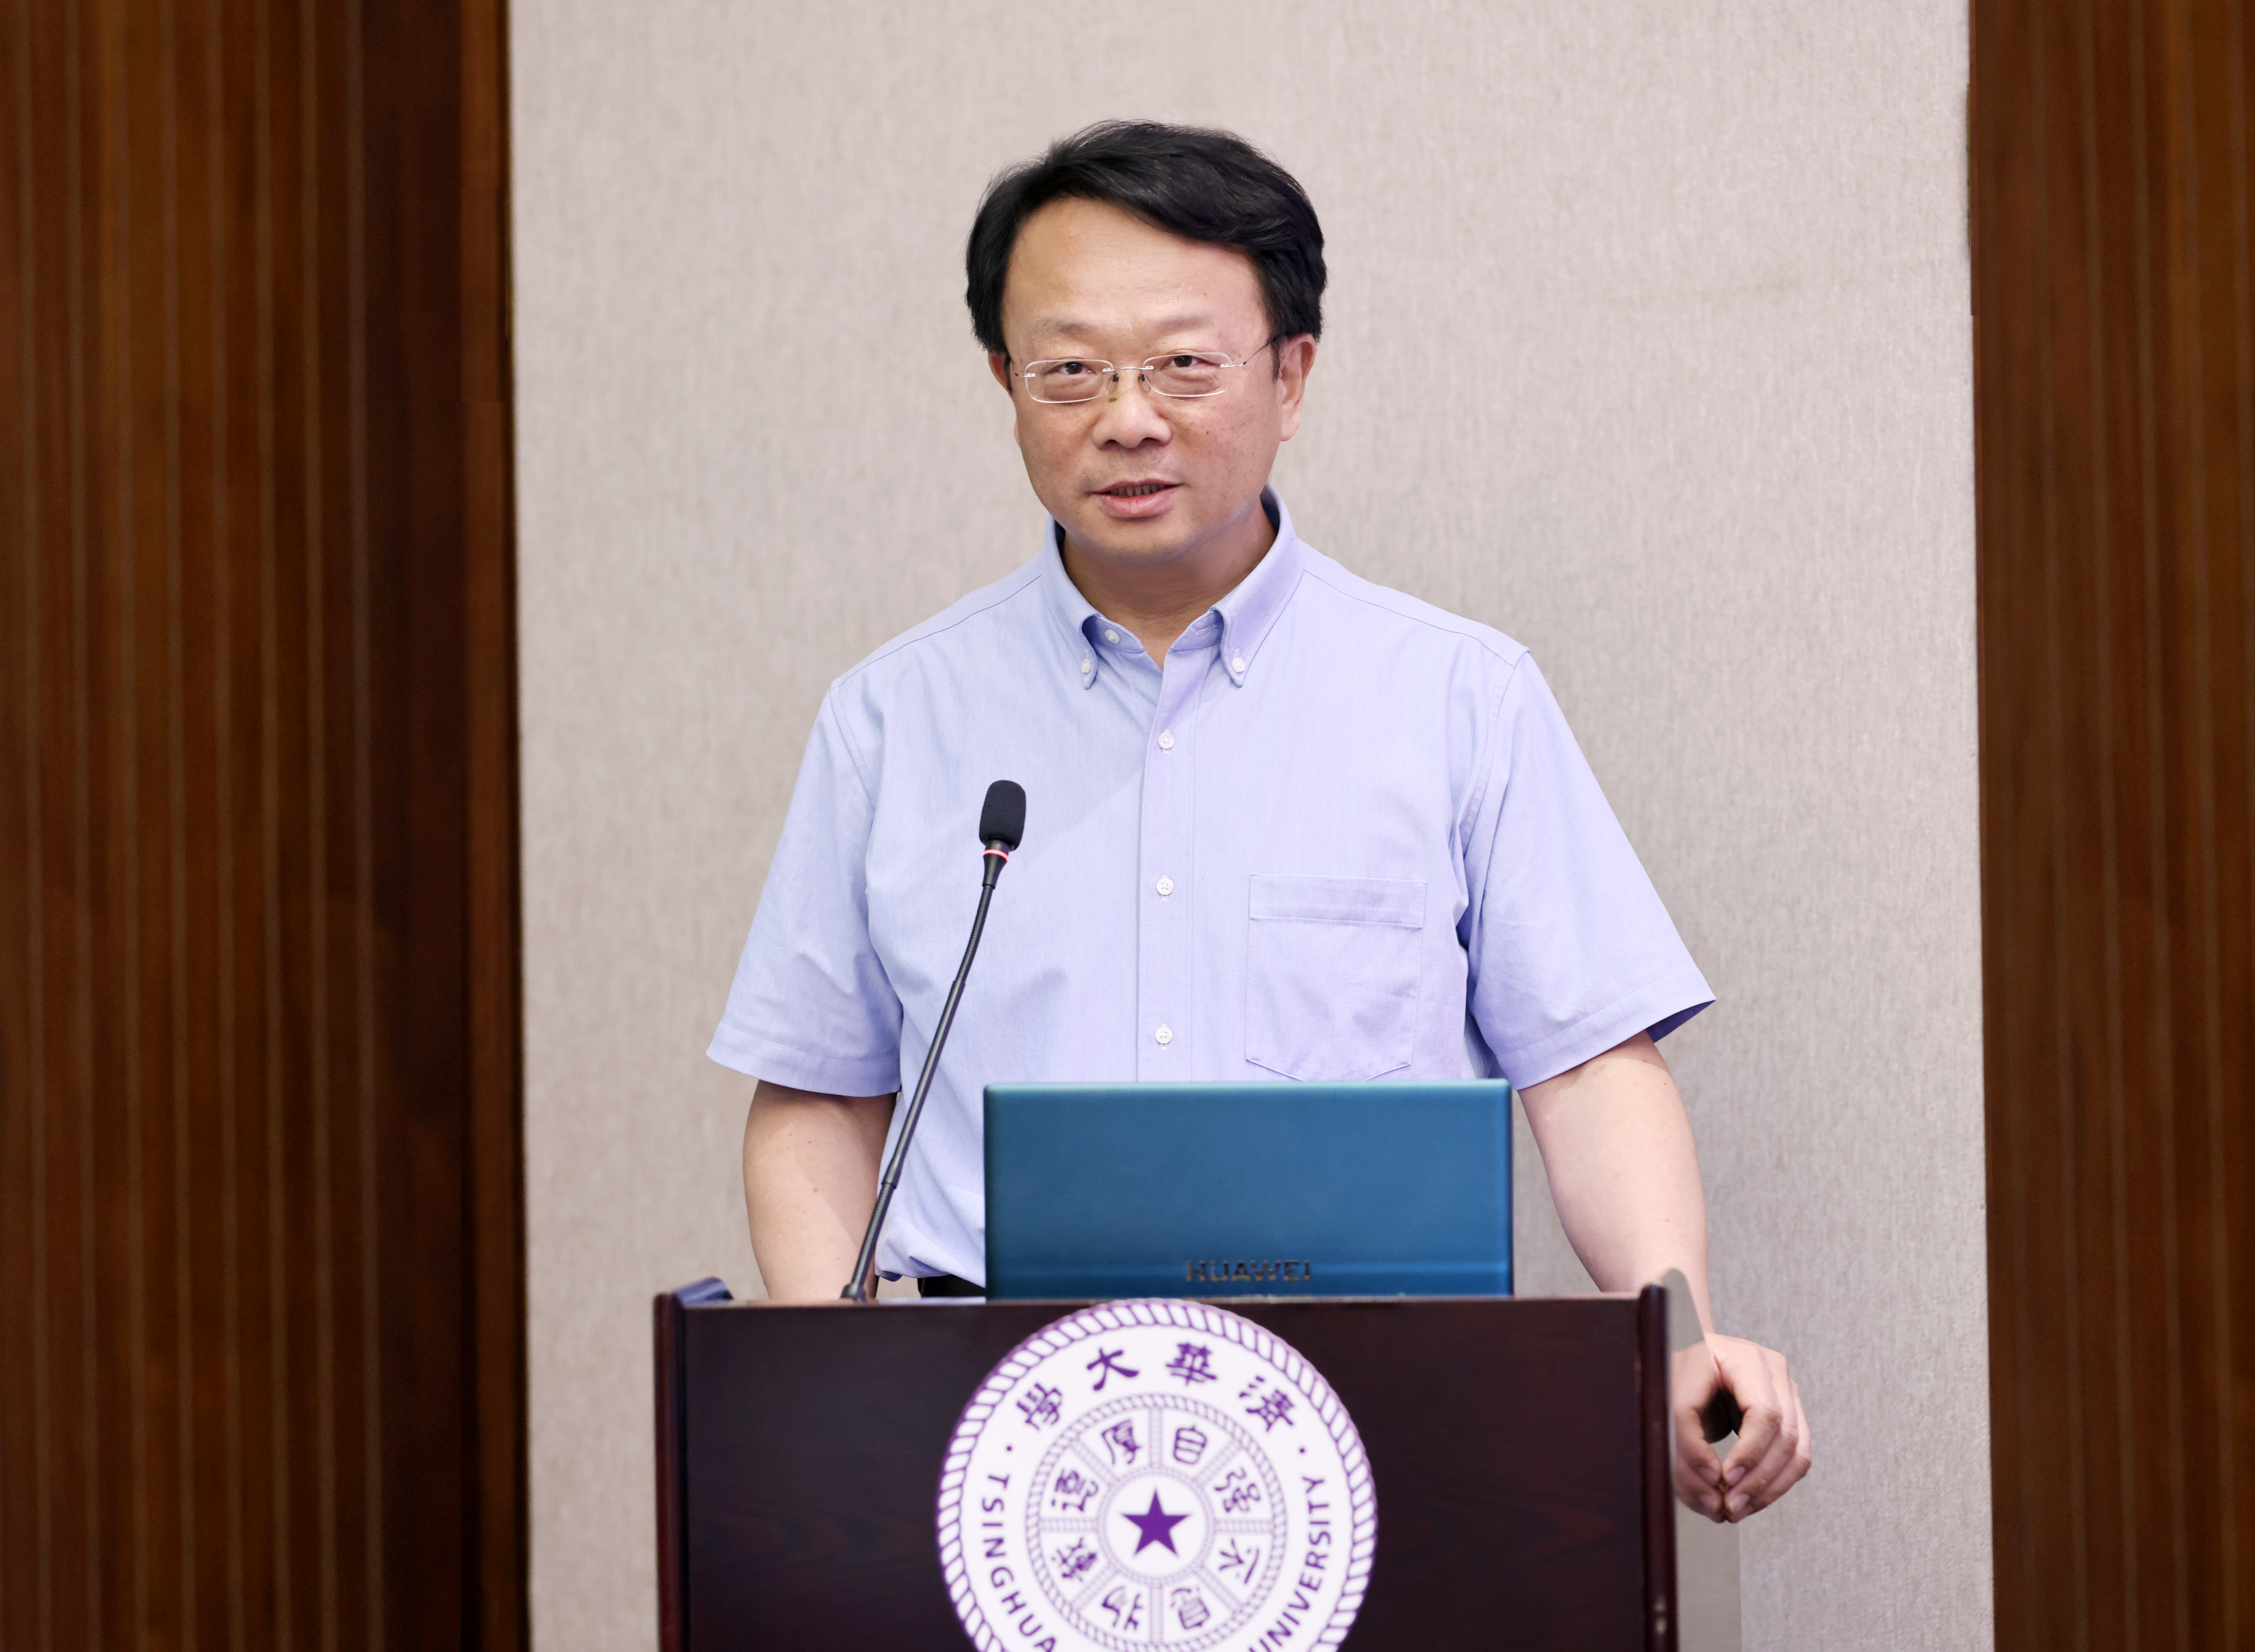 20230630-基础模型研究中心成立-曹文鹏-王校长讲话3.JPG